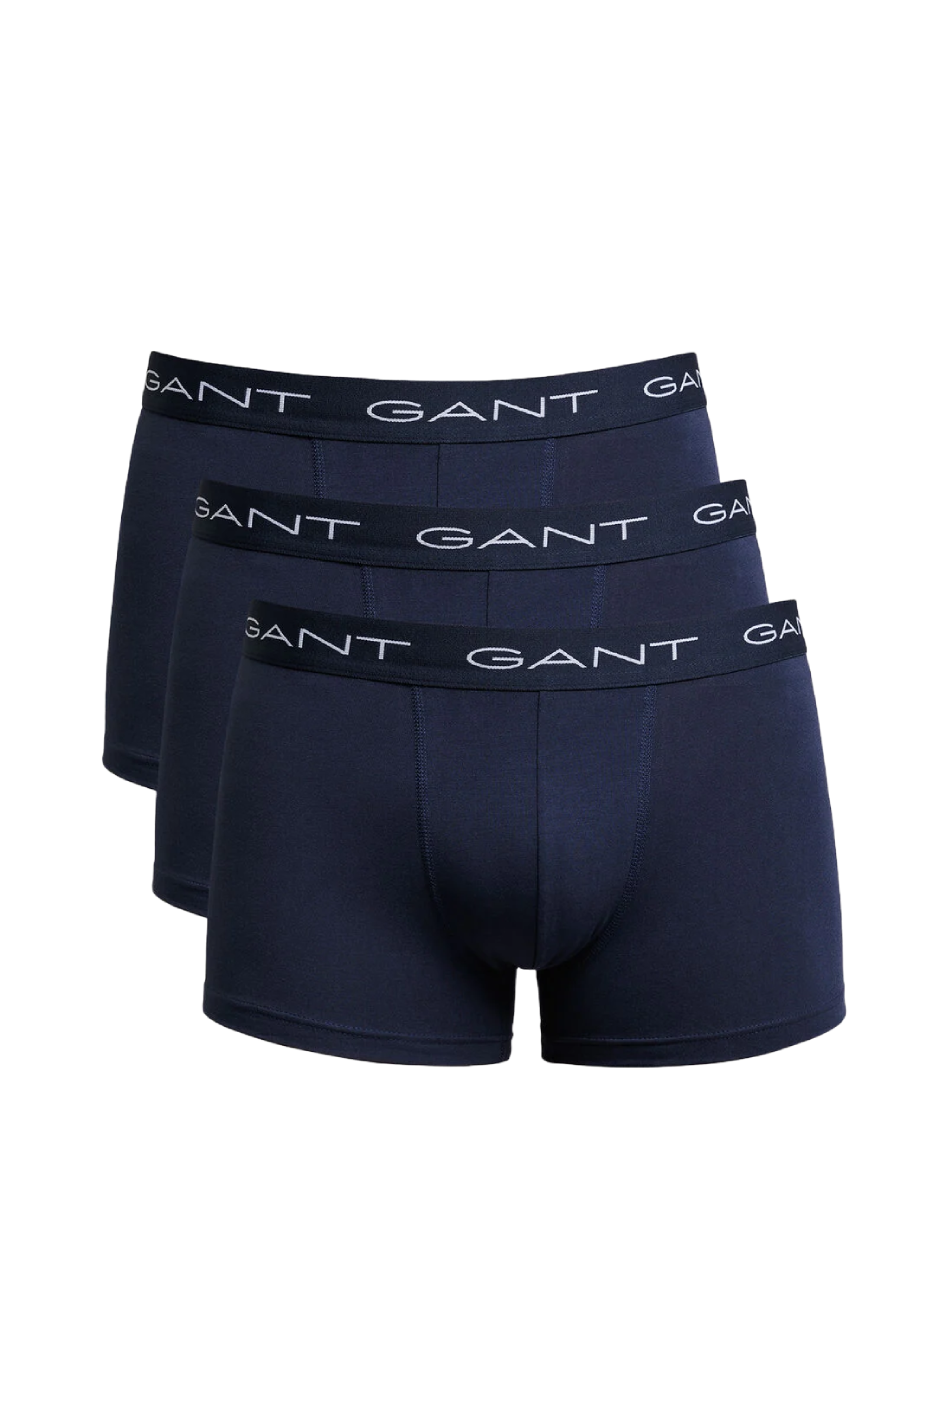 GANT 3 Pack Men's Trunk